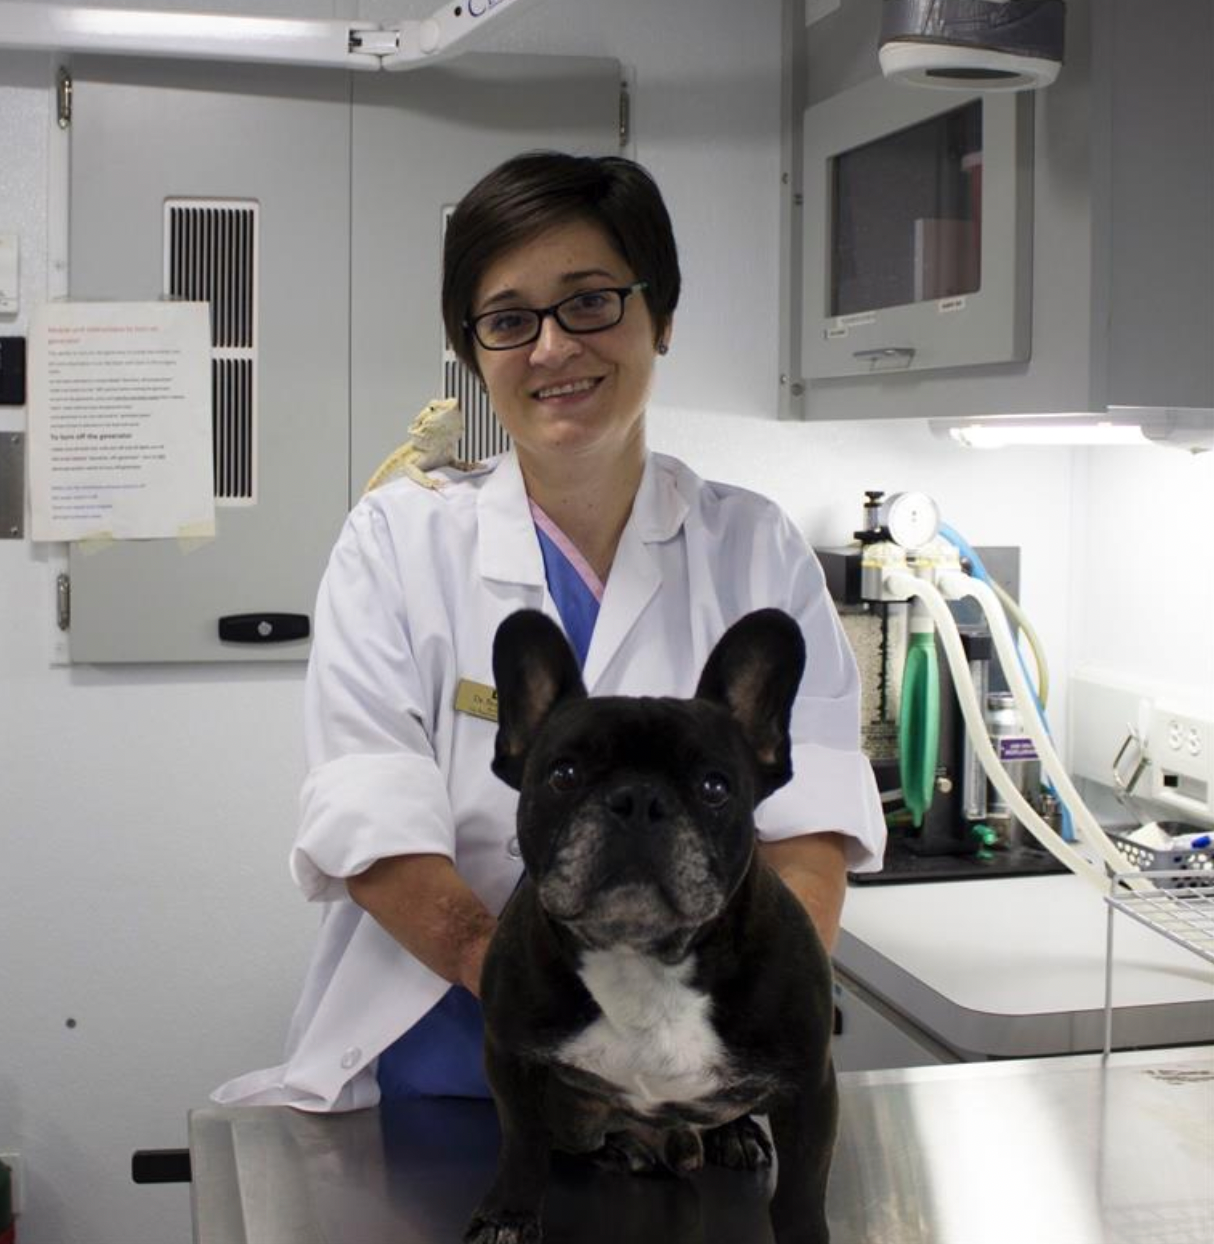 Unwavering spirit: A veterinarian’s inspiring story into veterinary medicine